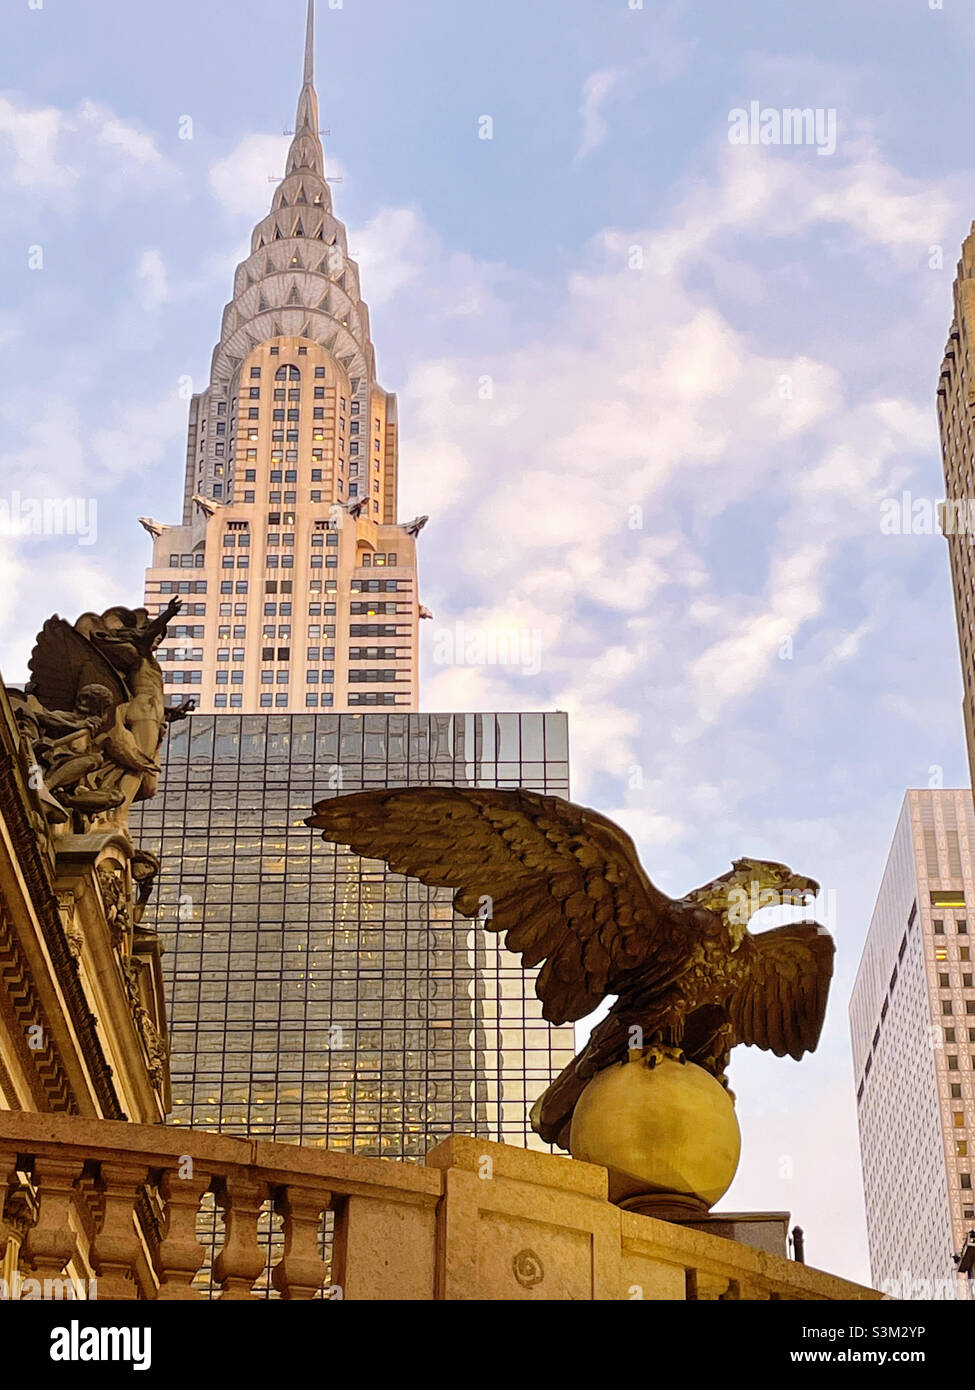 Un aigle géant en fonte se trouve à l'entrée à l'angle de Vanderbilt Avenue et East 42nd St. au terminal Grand Central avec le bâtiment Chrysler en arrière-plan, 2021, New York City, États-Unis Banque D'Images